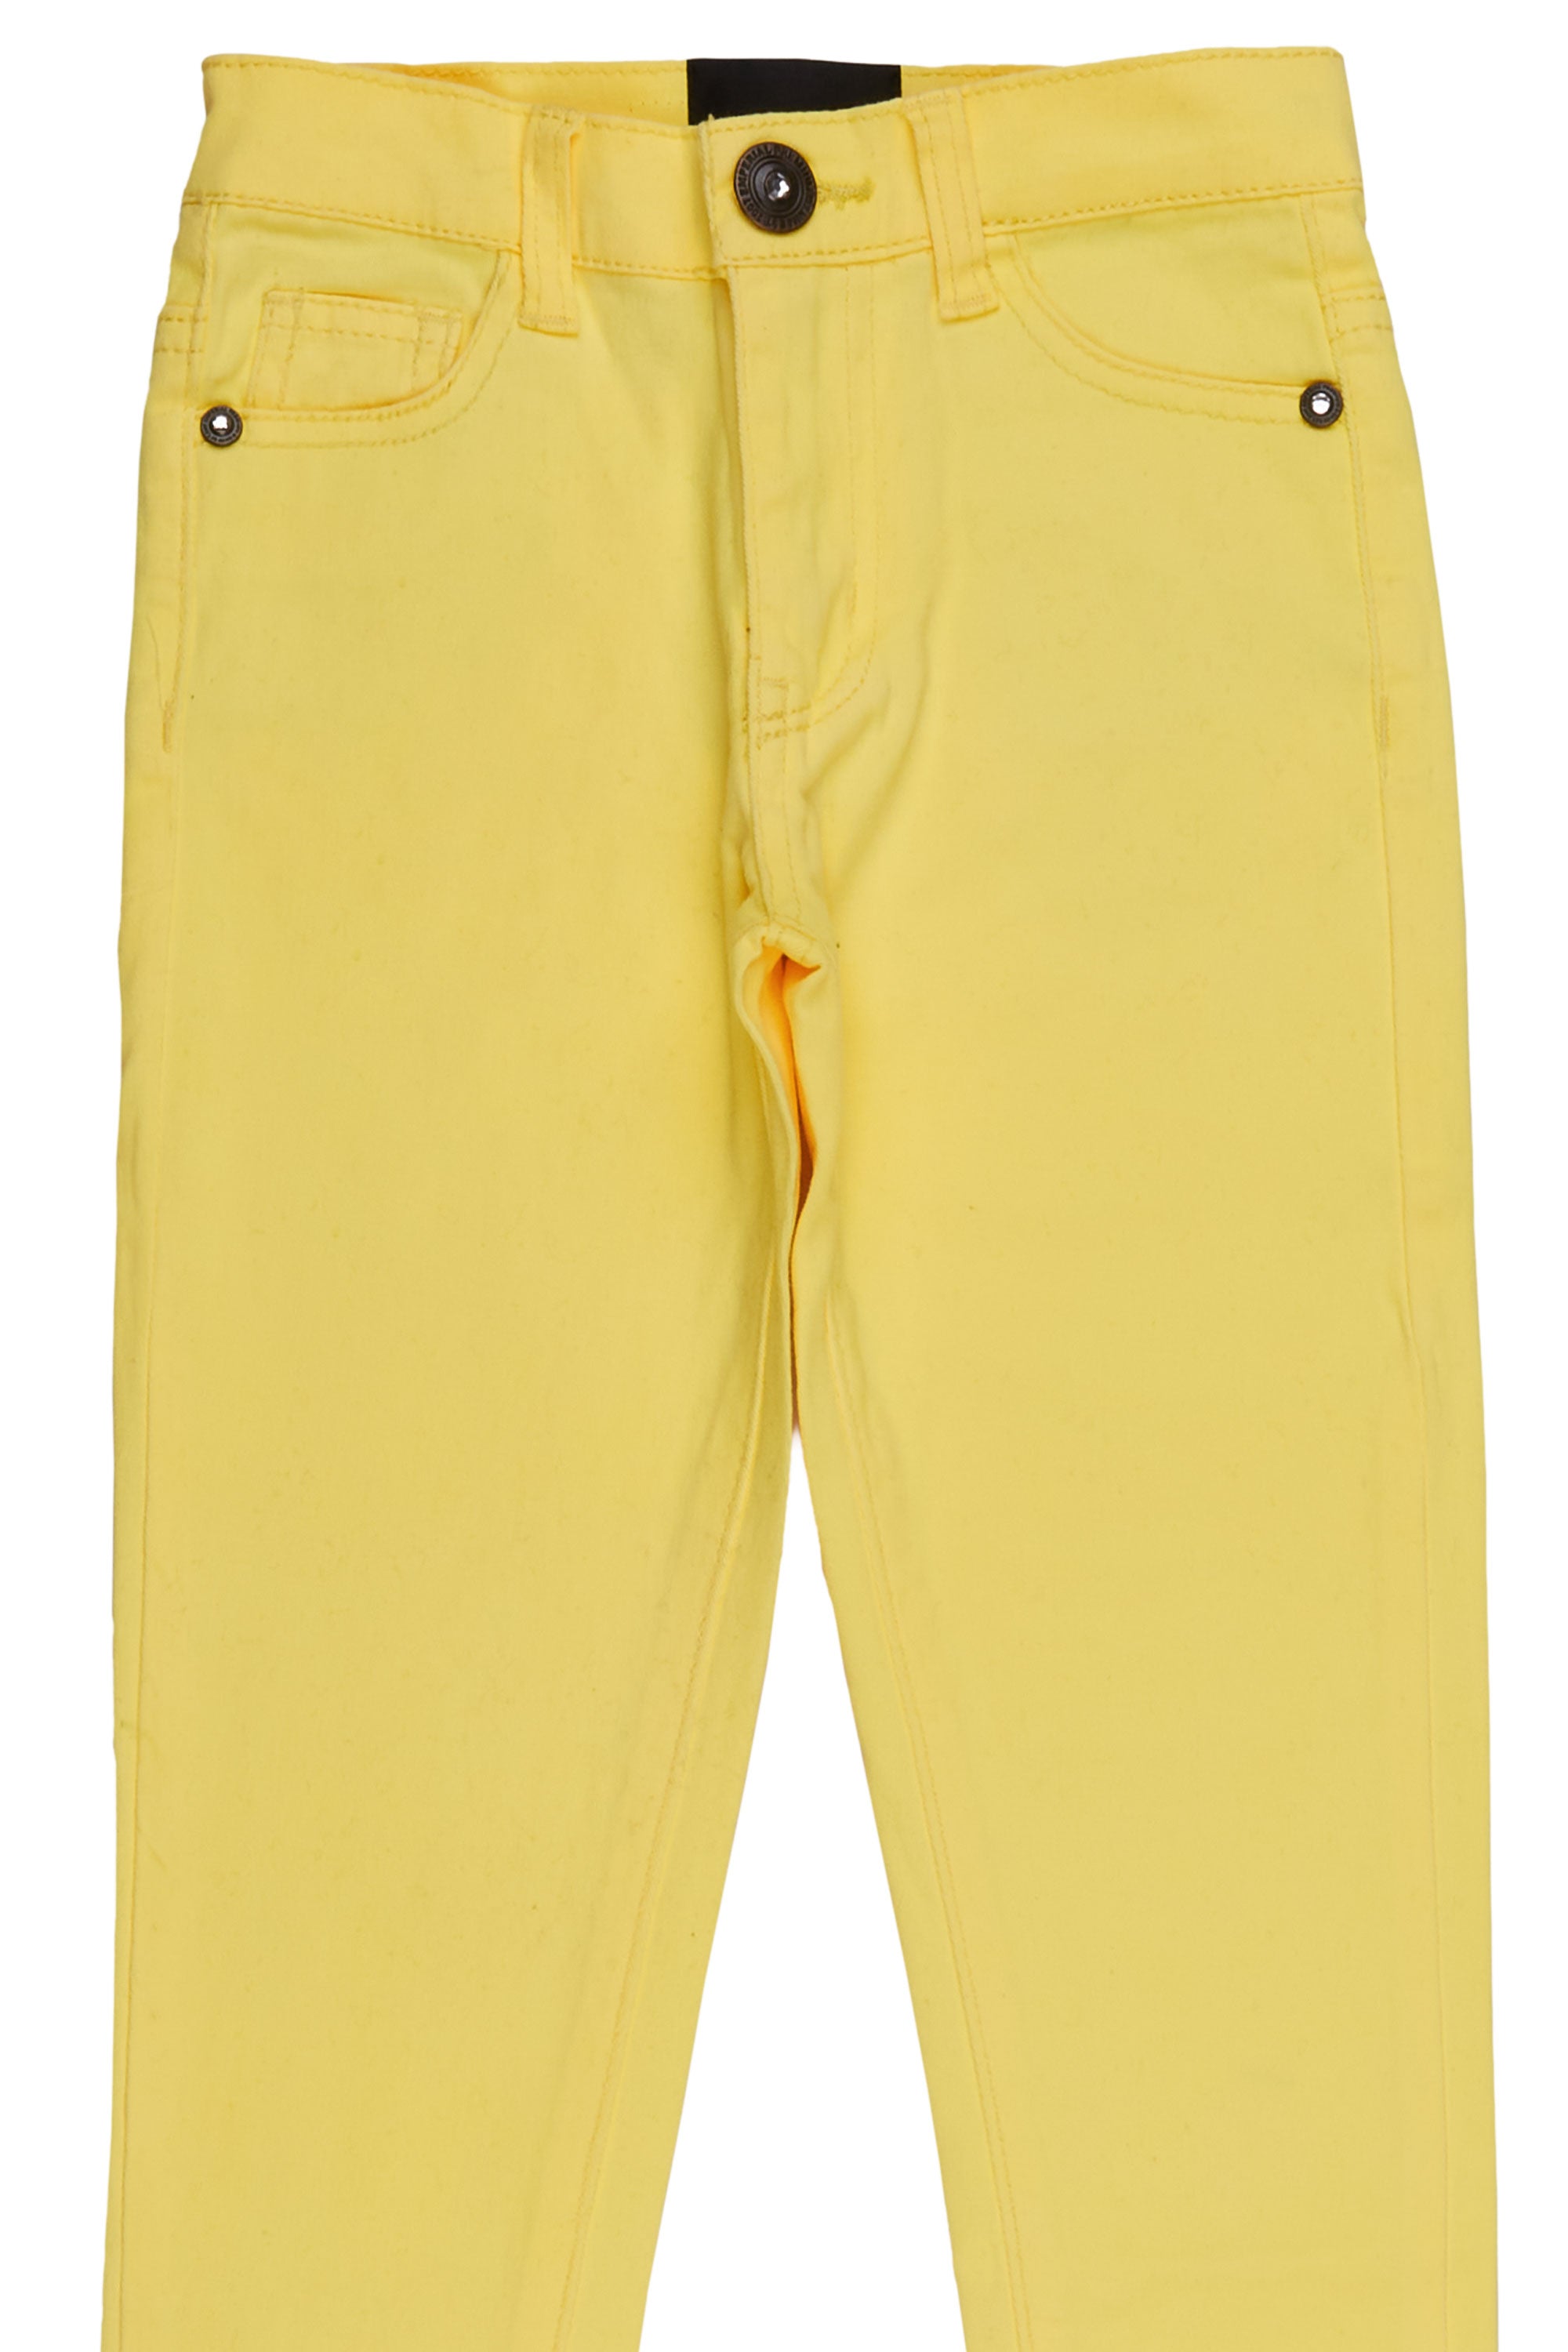 Girls Zilpha Neon Yellow 5 Pocket Jean